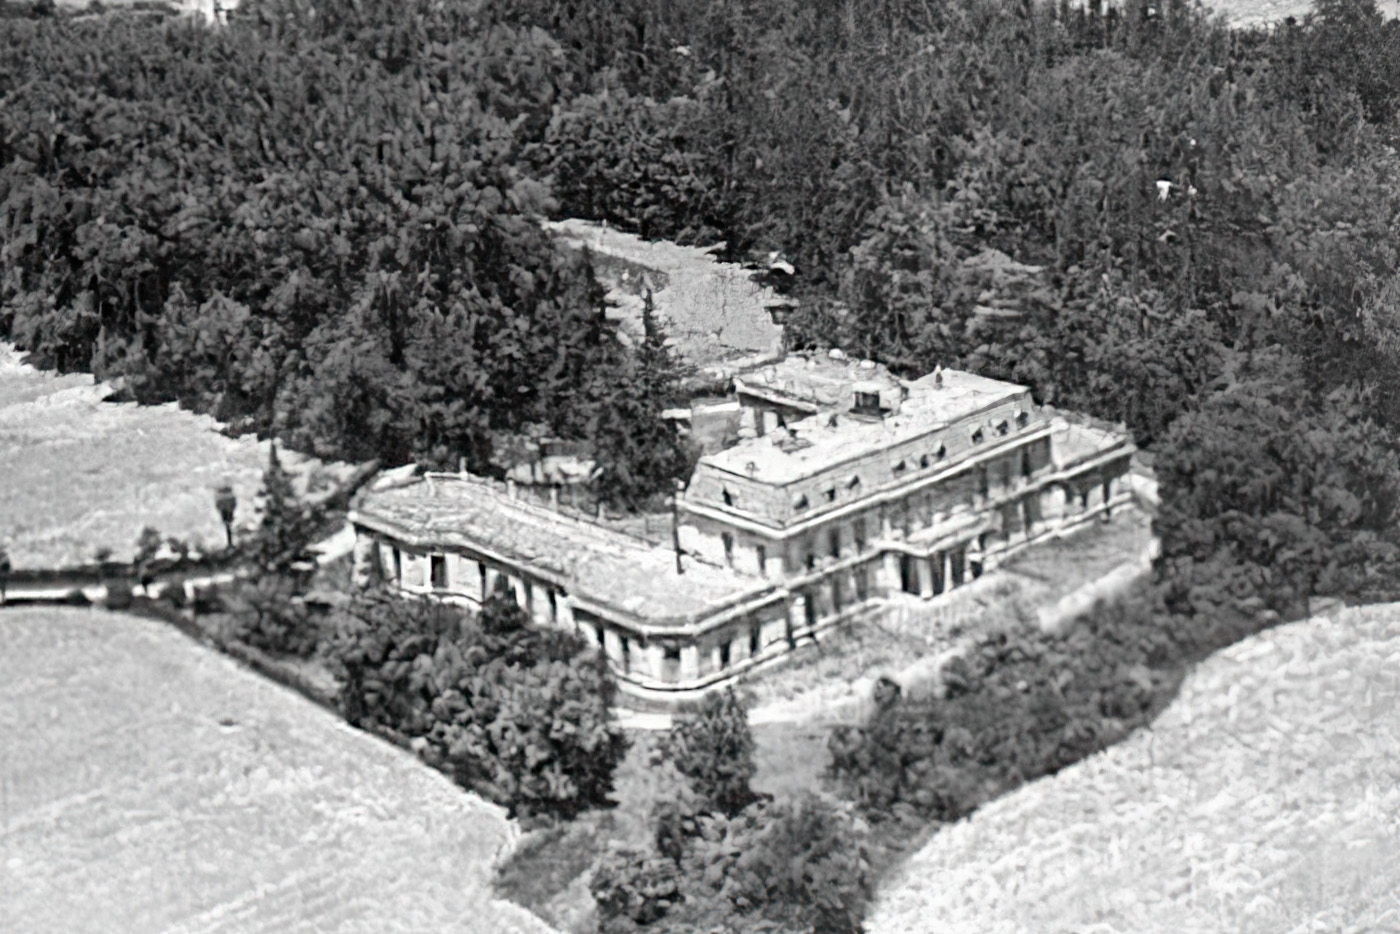 Palacio de los Gosálvez, Arquitectura Abandonada por Adolfo Gosálvez. Venta de Fotografía de autor en edición limitada. AG Shop